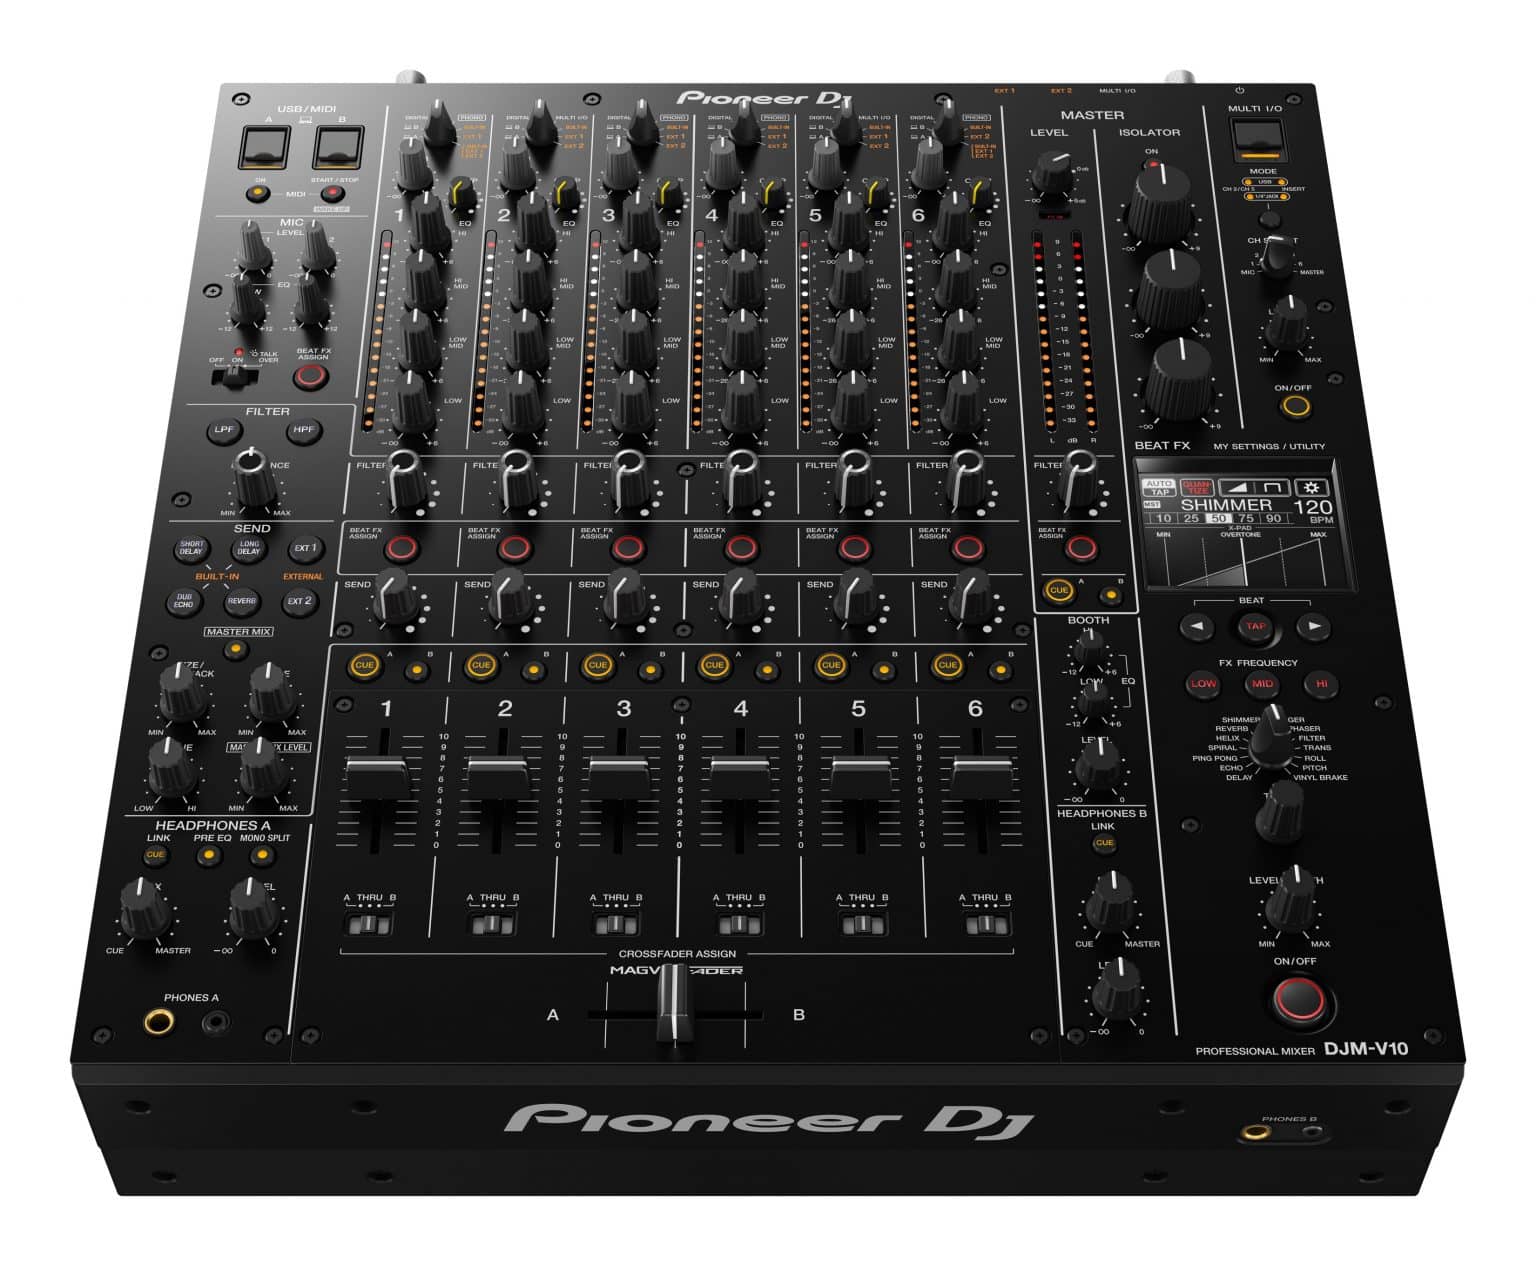 Review de la DJM-V10: El nuevo concepto de mezcla de Pioneer DJ